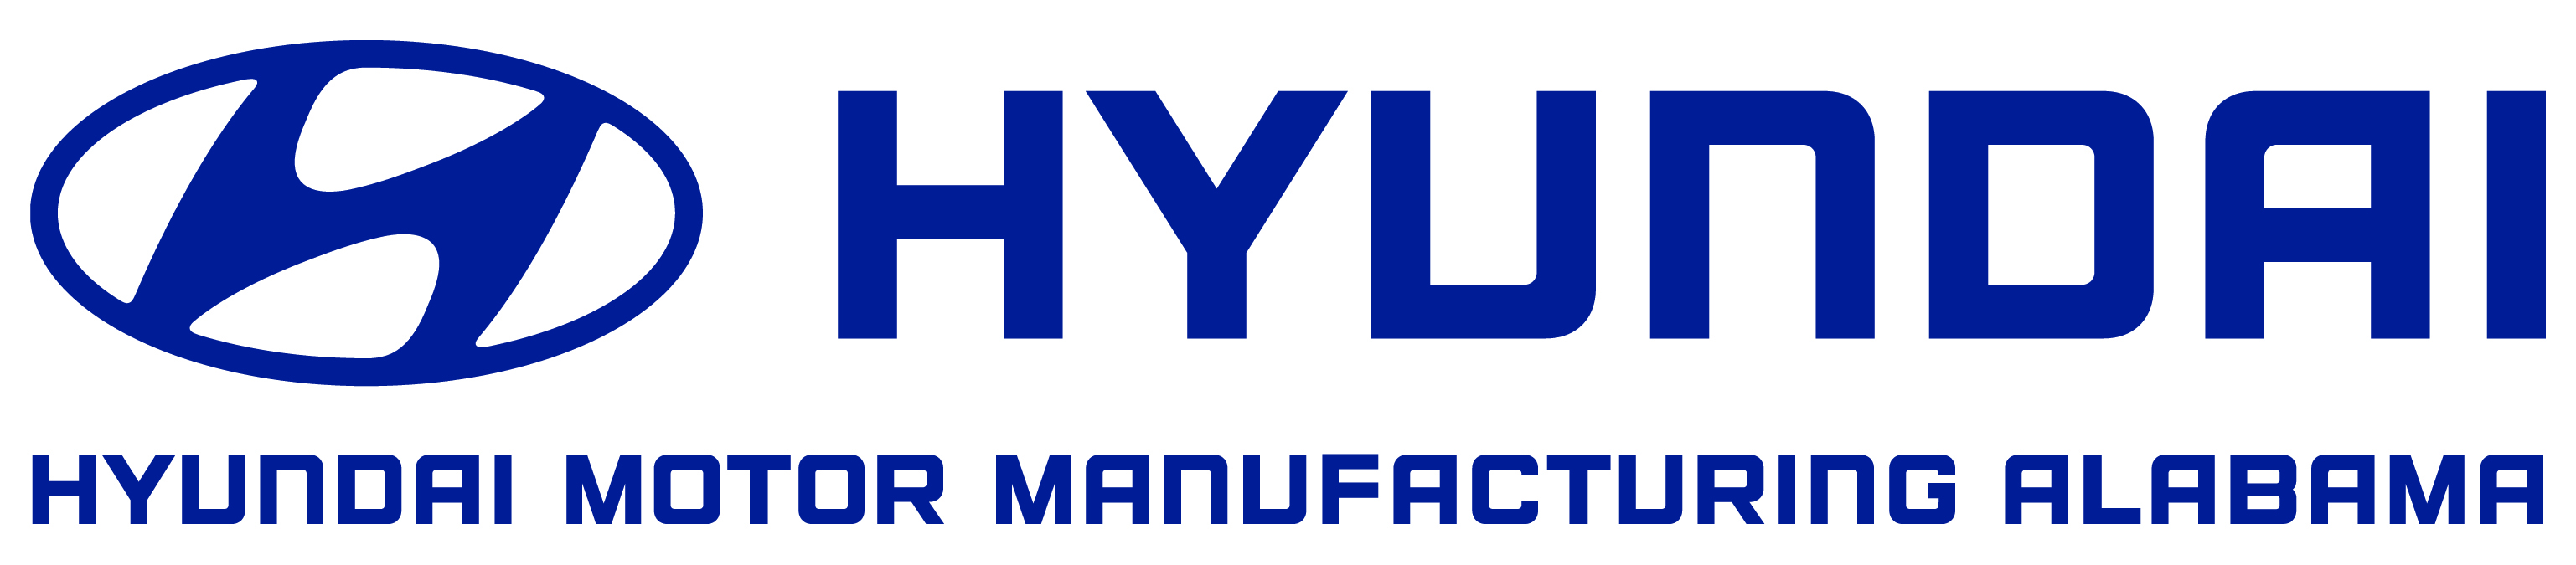 4. Fabricación de motores Hyundai (Bronce)